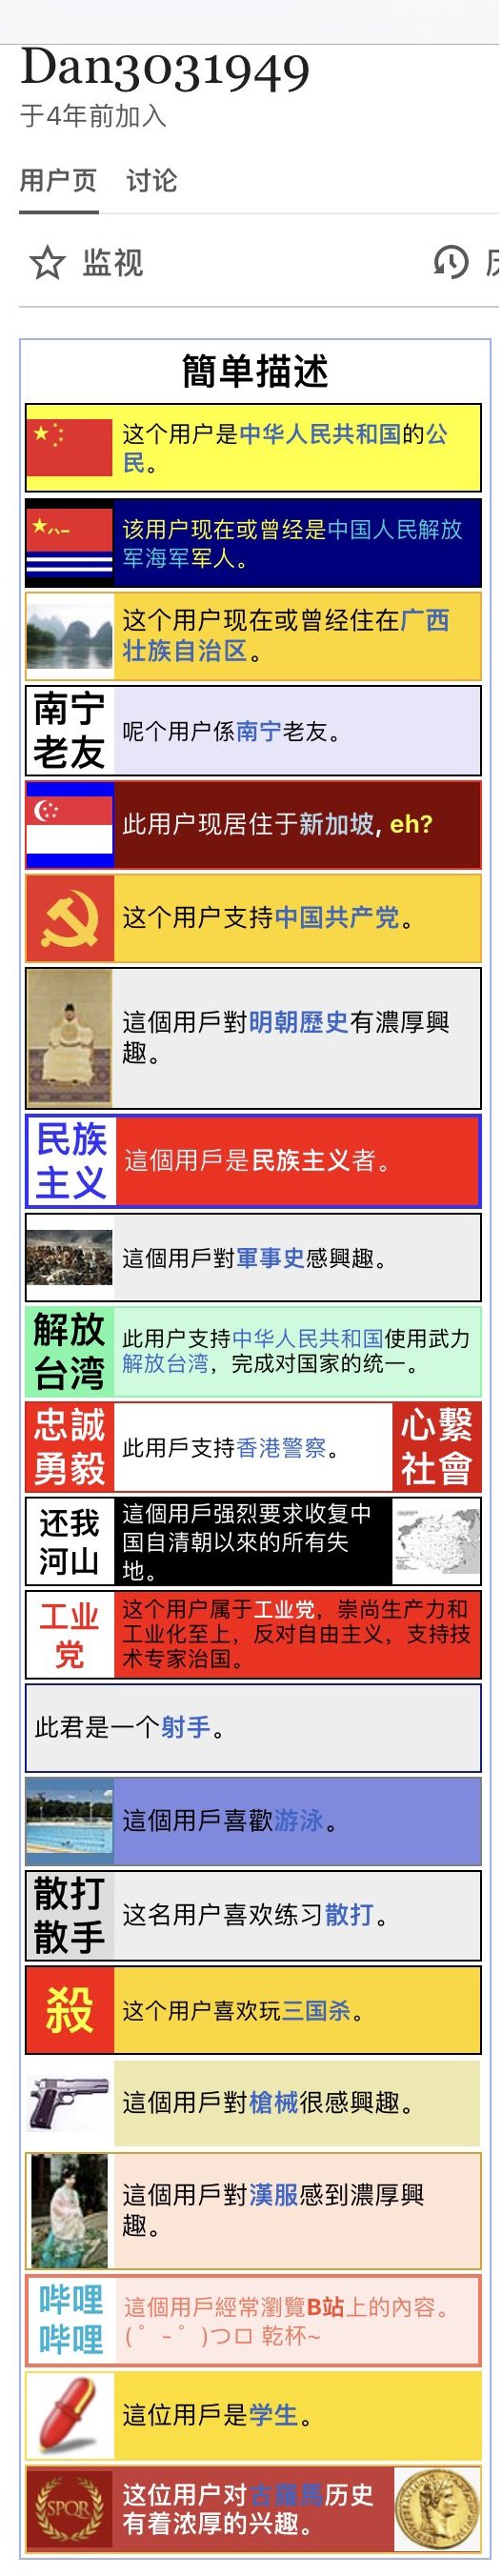 维基百科“长津湖”词条遭小粉红篡改 爆发论战